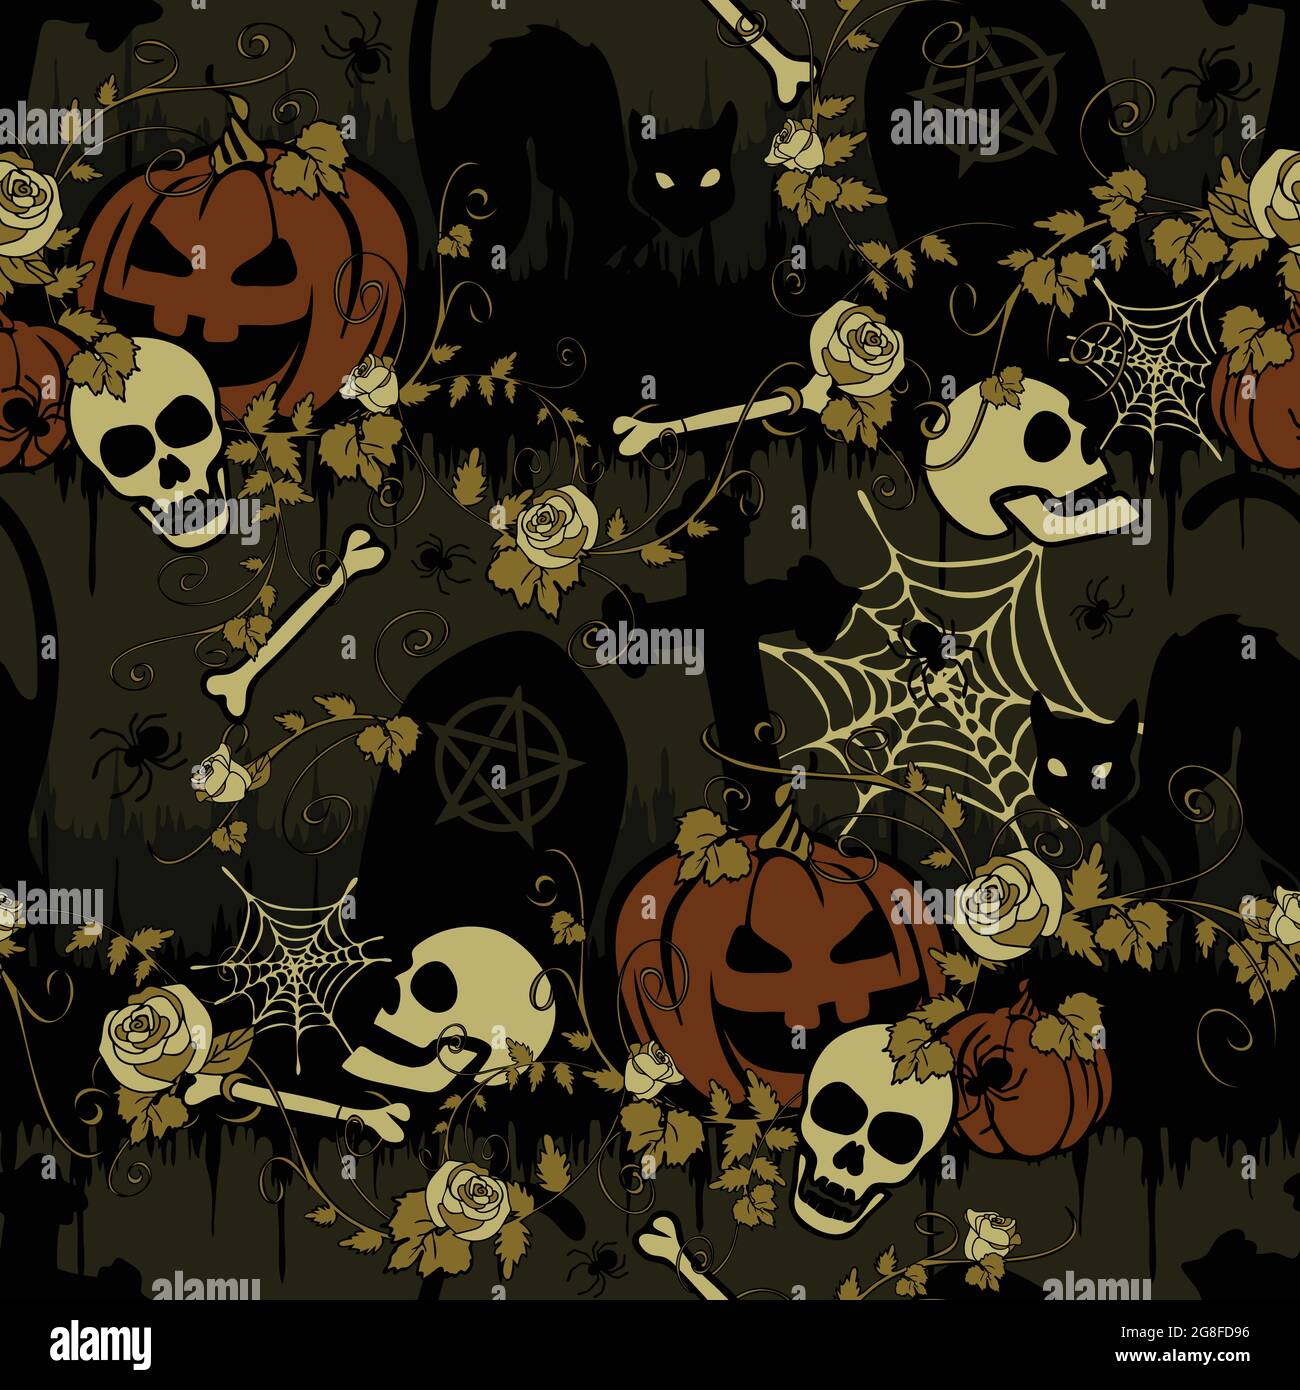 34 Black Cat Halloween Wallpaper  WallpaperSafari